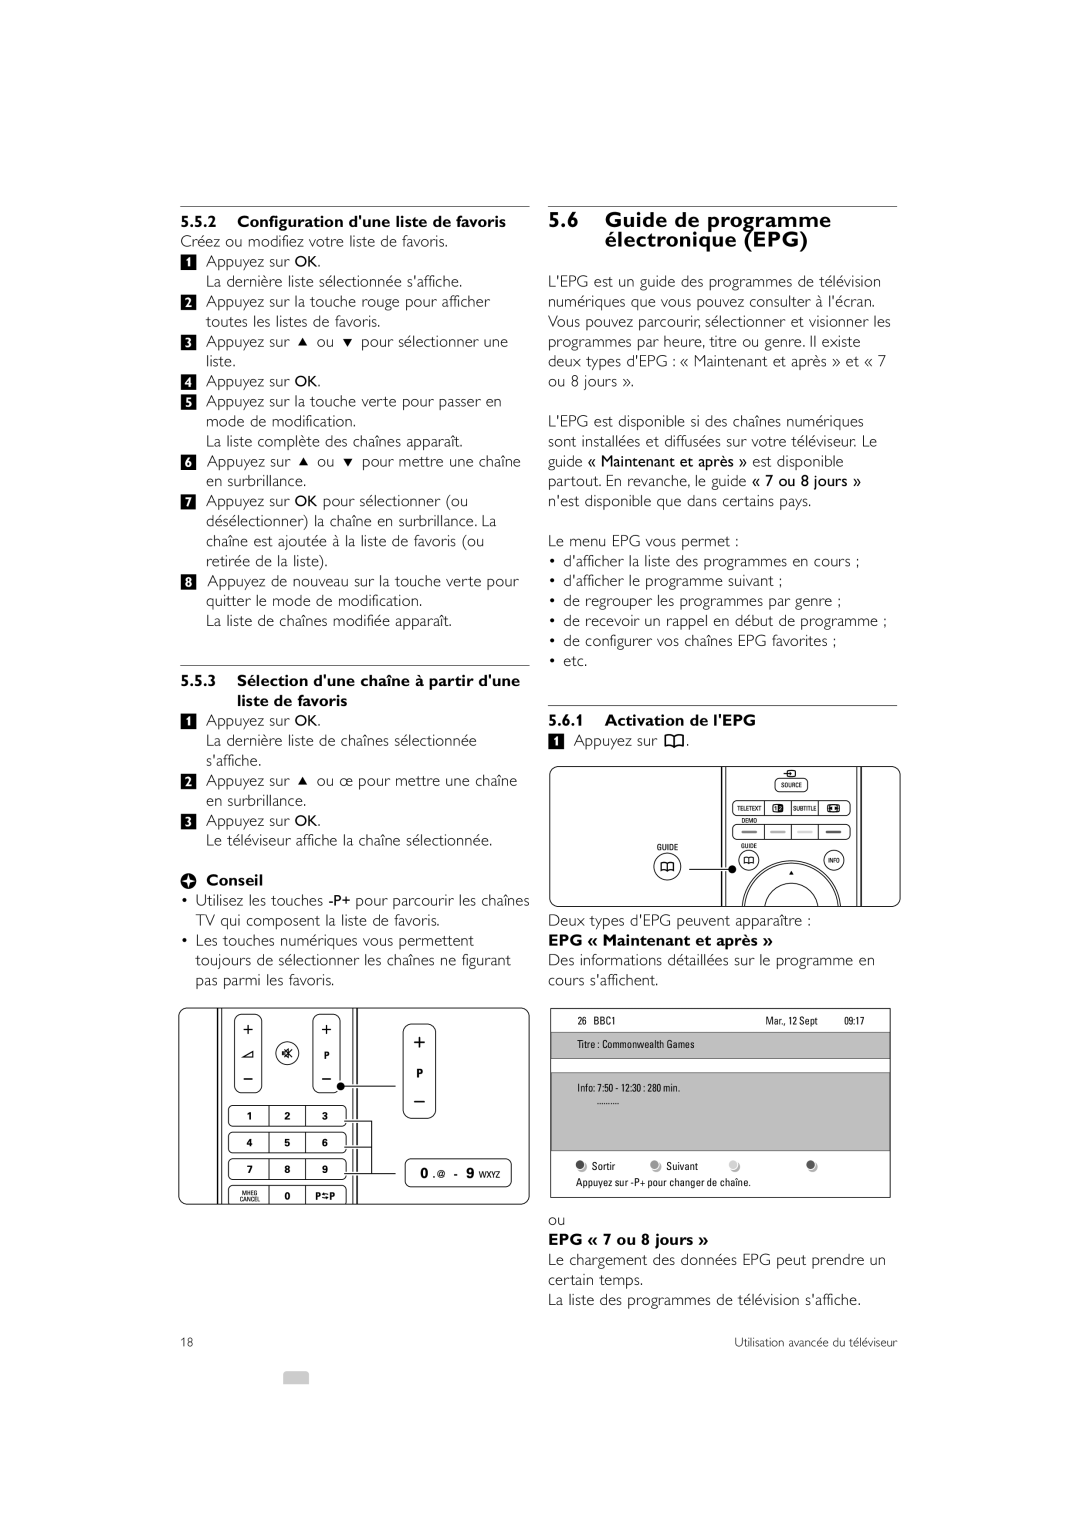 Philips 47PFL7403 manual Guide de programme électronique EPG, 5.5.3 Sélection dune chaîne à partir dune liste de favoris 